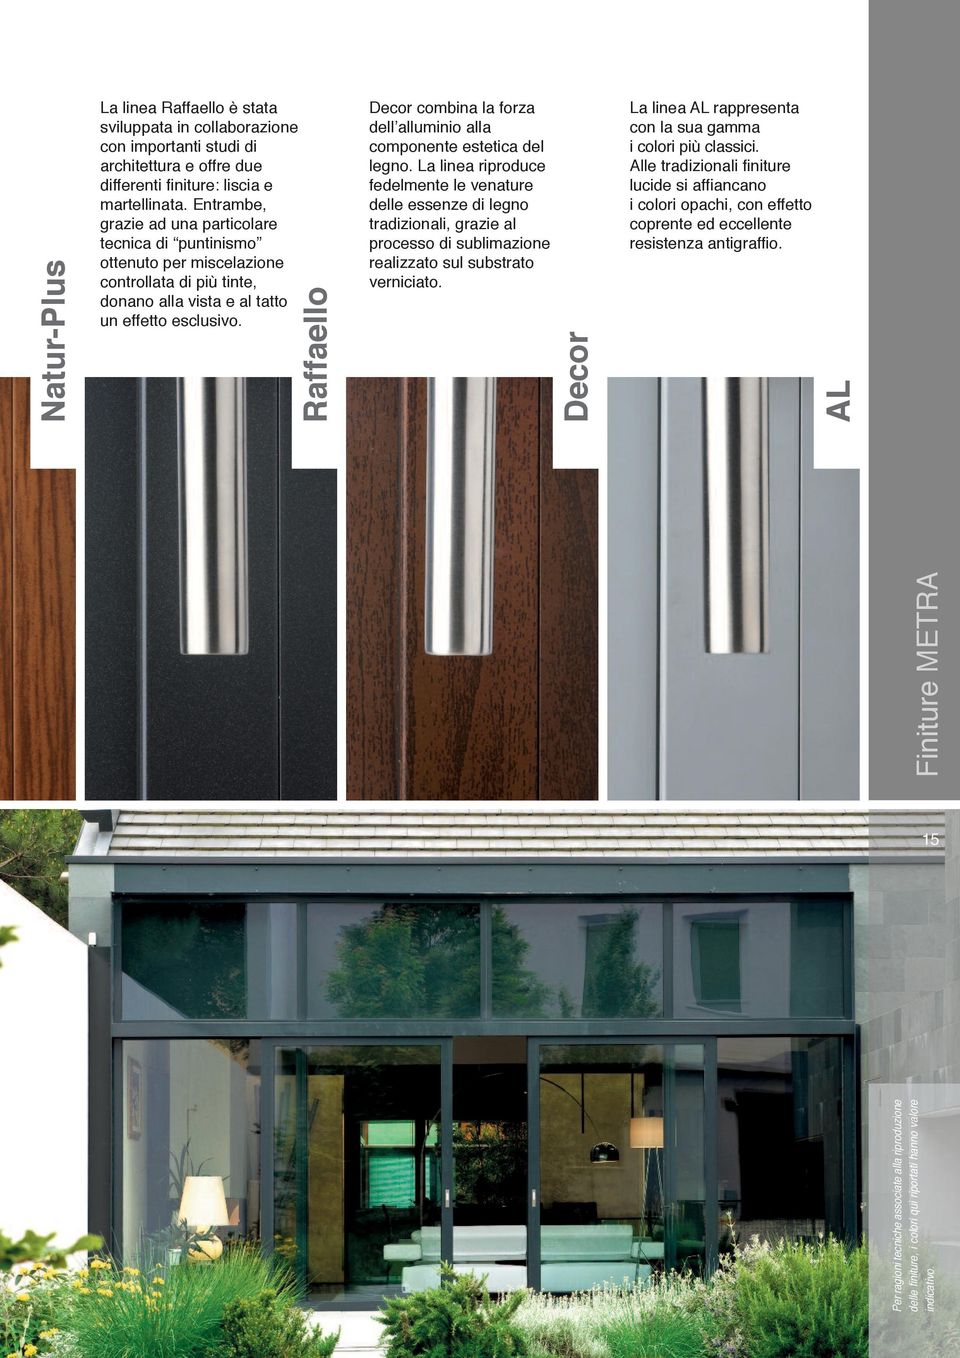 Raffaello Decor combina la forza dell alluminio alla componente estetica del legno.